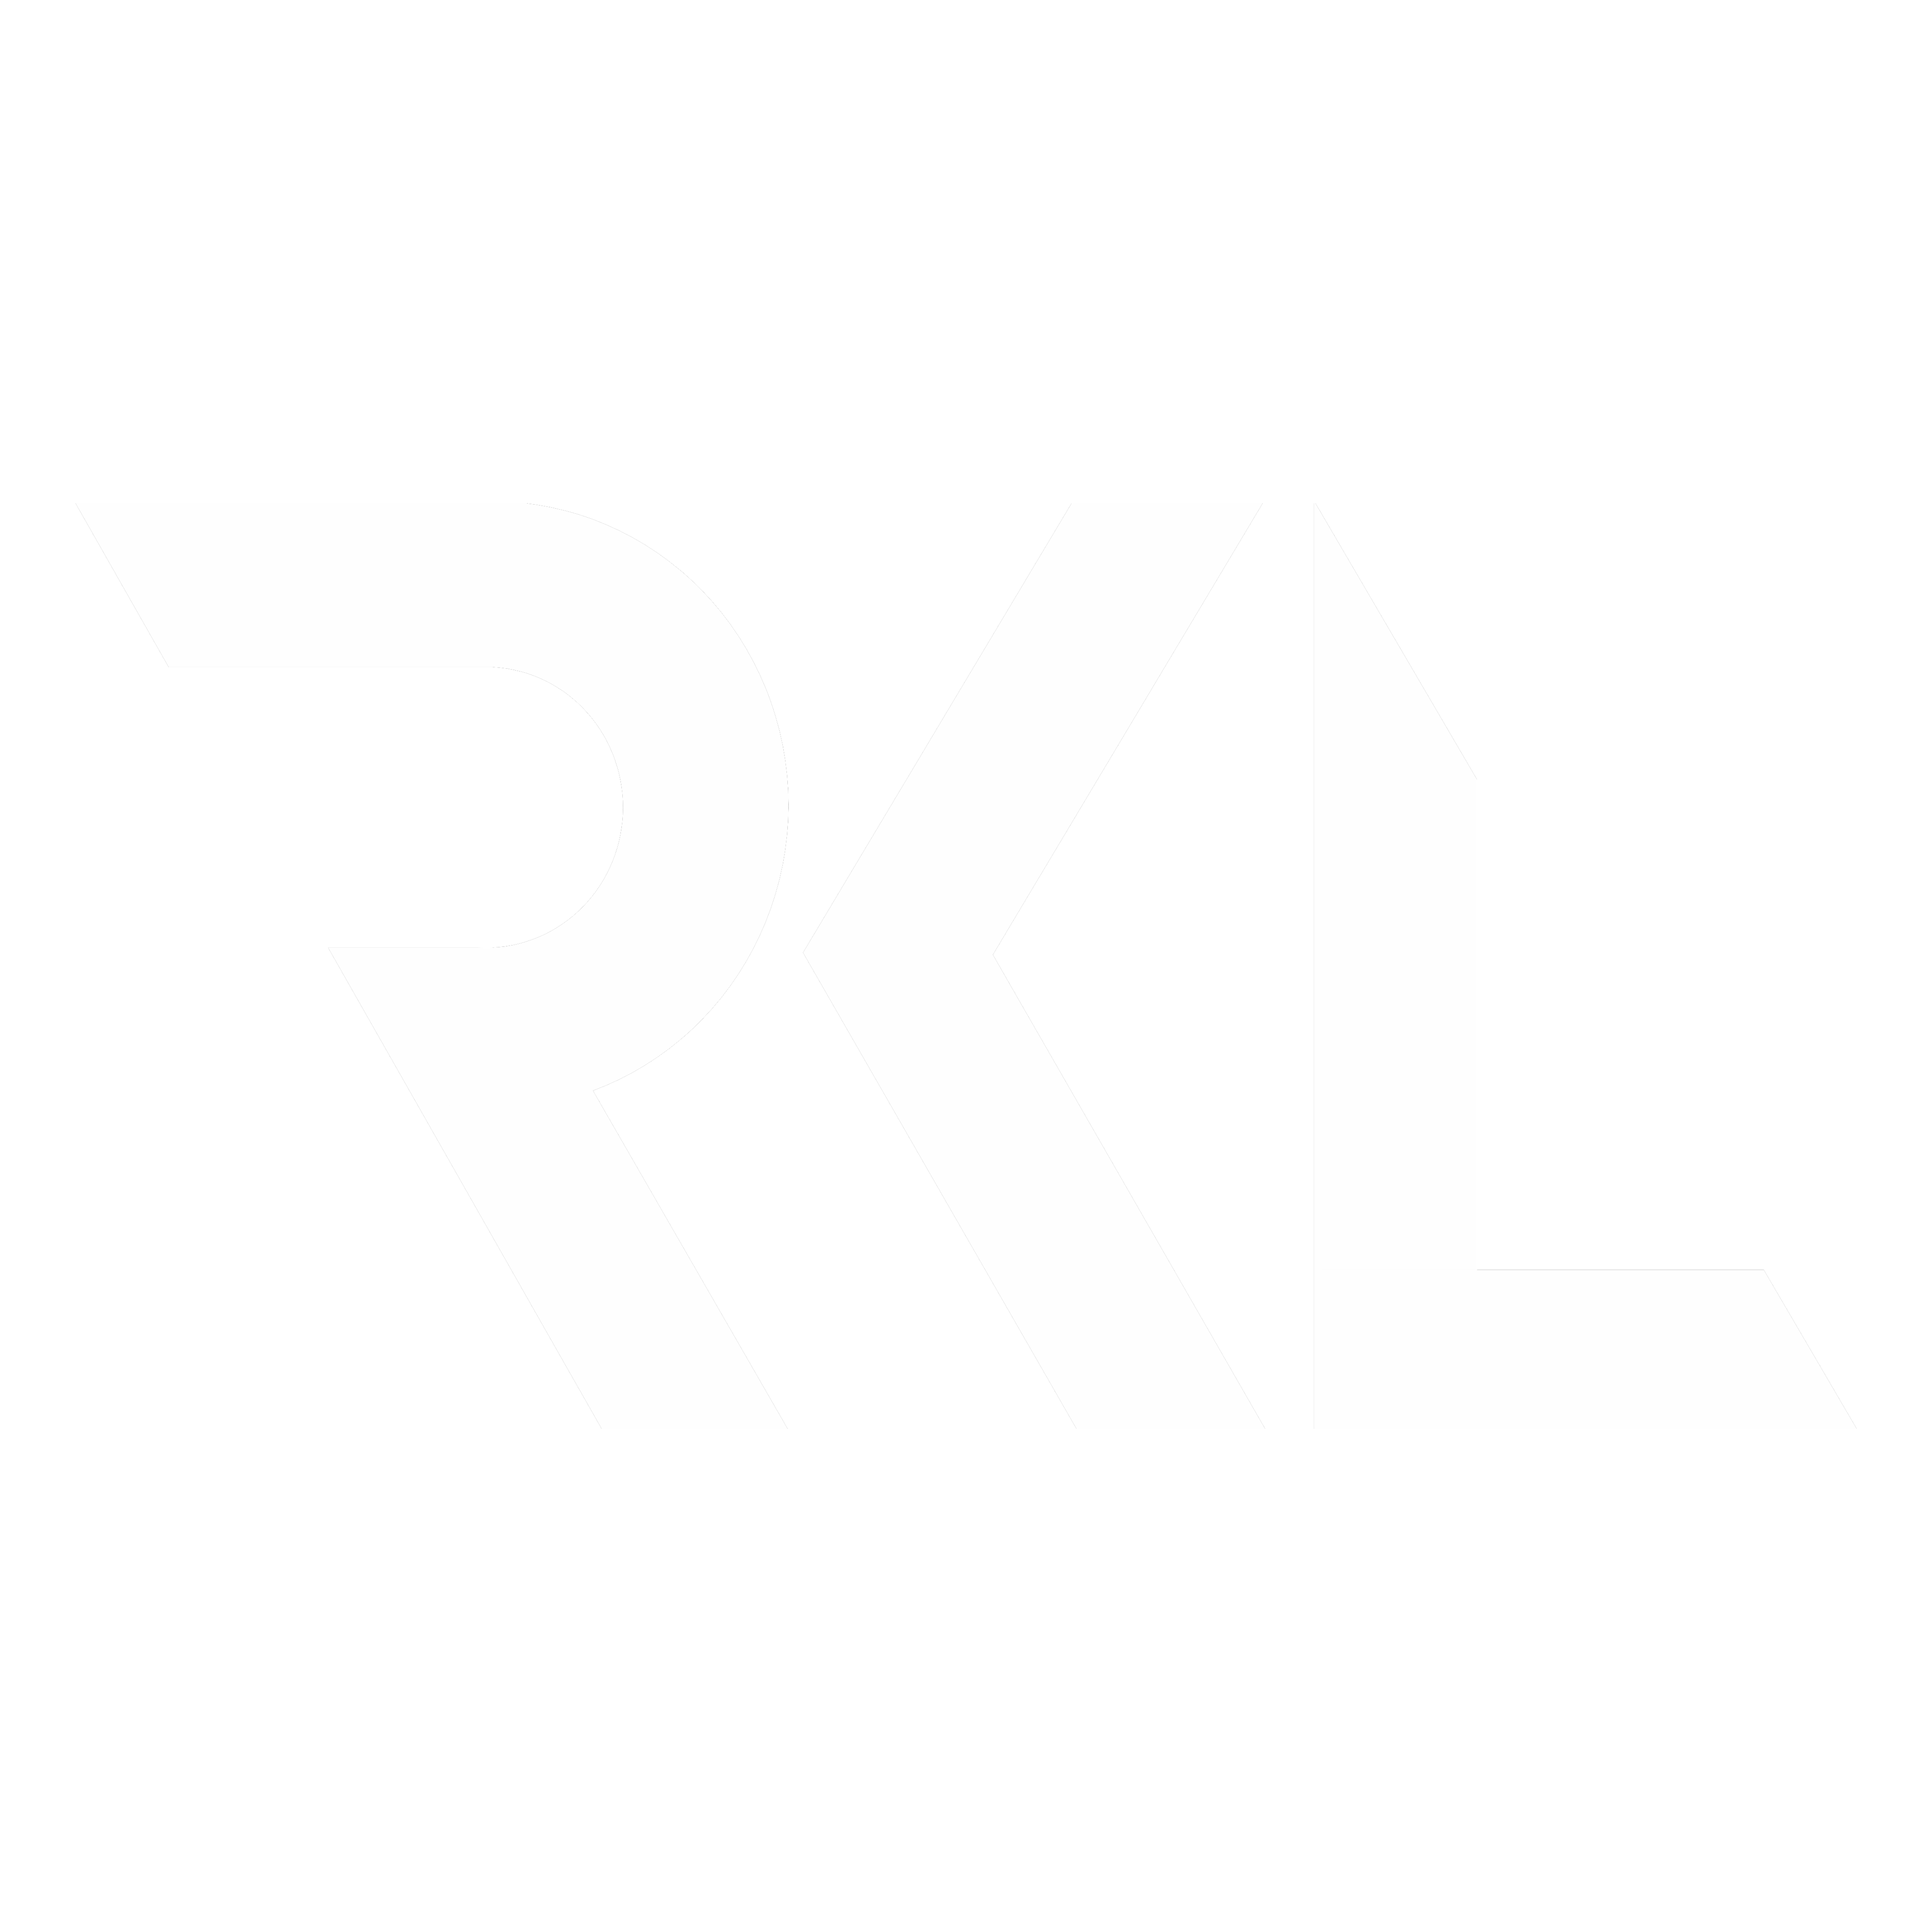 rkl logo white transparent bg.png